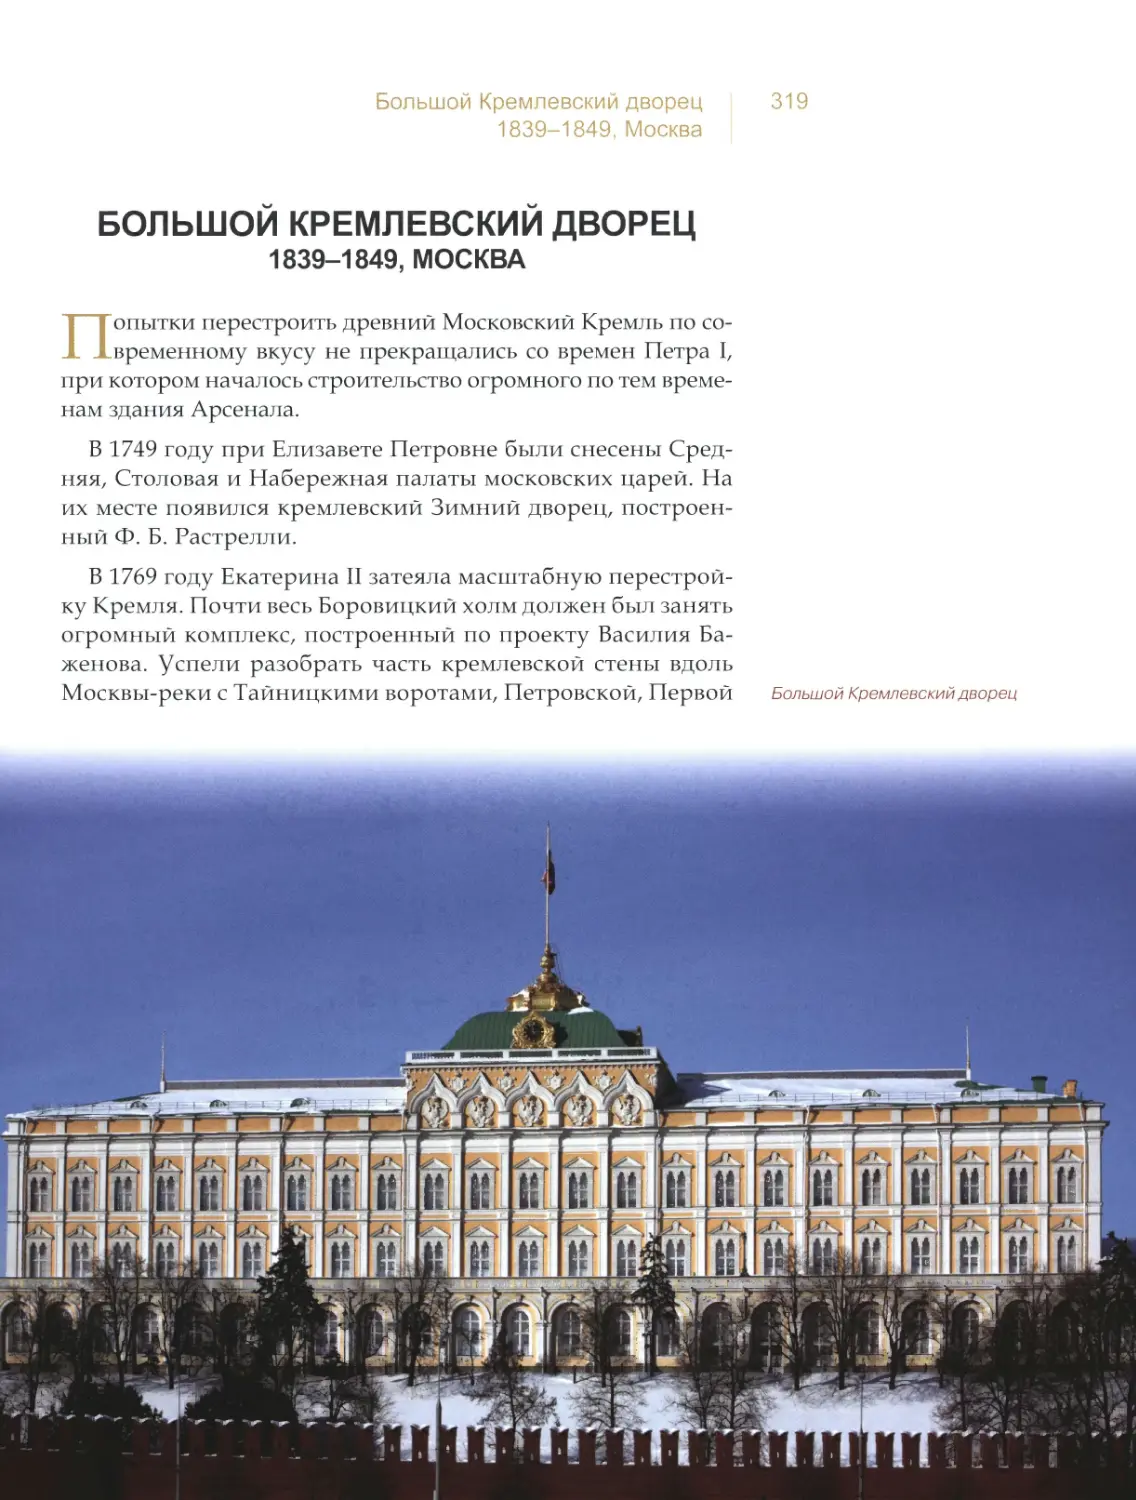 Большой Кремлевский дворец, Москва